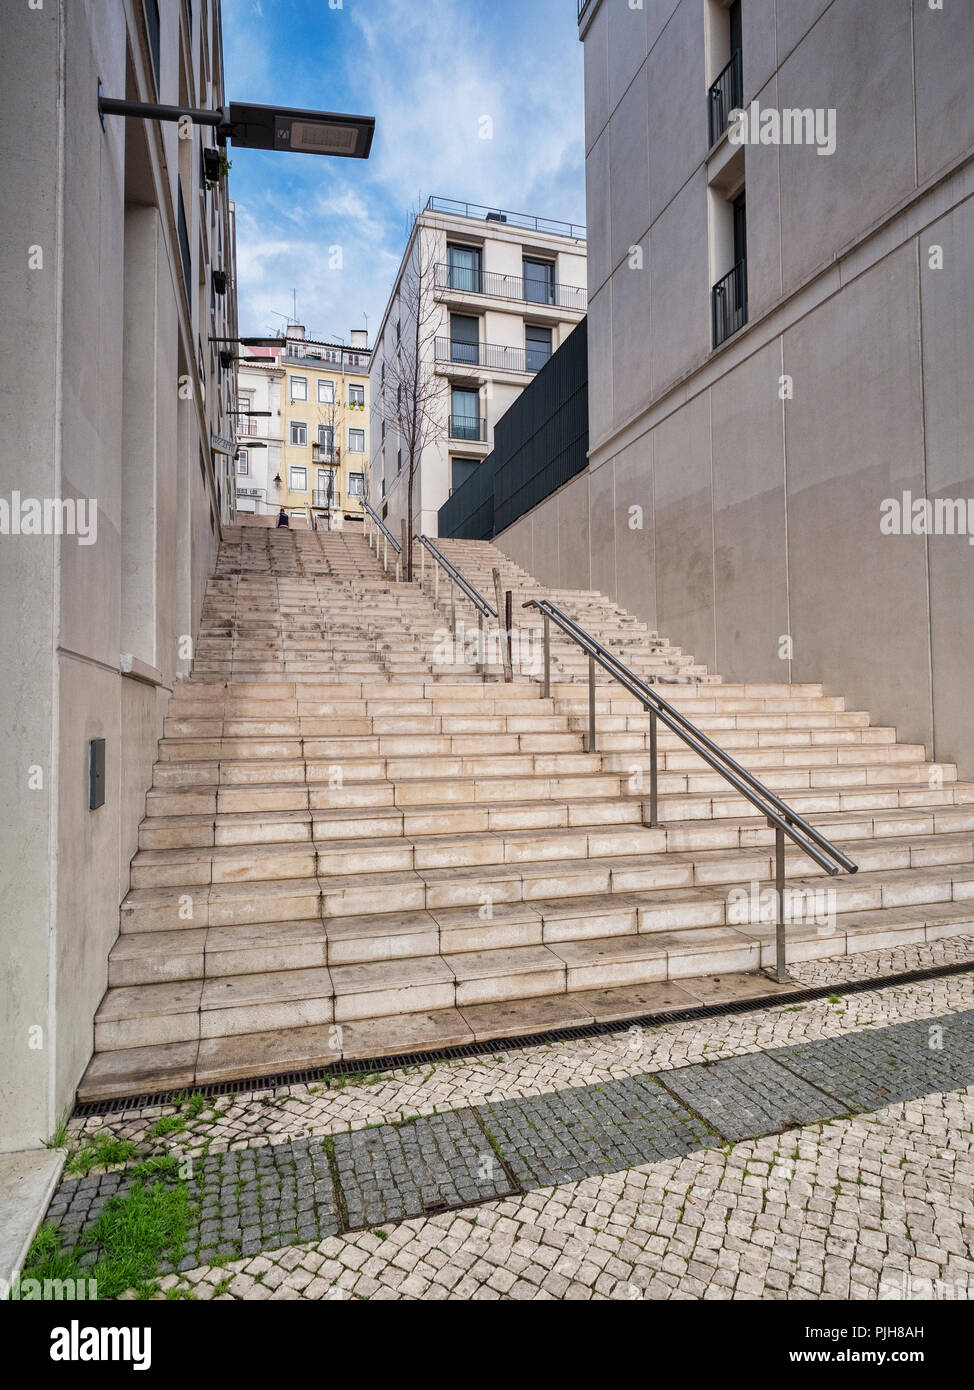 Lisbona, Portogallo - Passi, tipico di quelli visti in tutta Lisbona, una città costruita su sette colline. Foto Stock